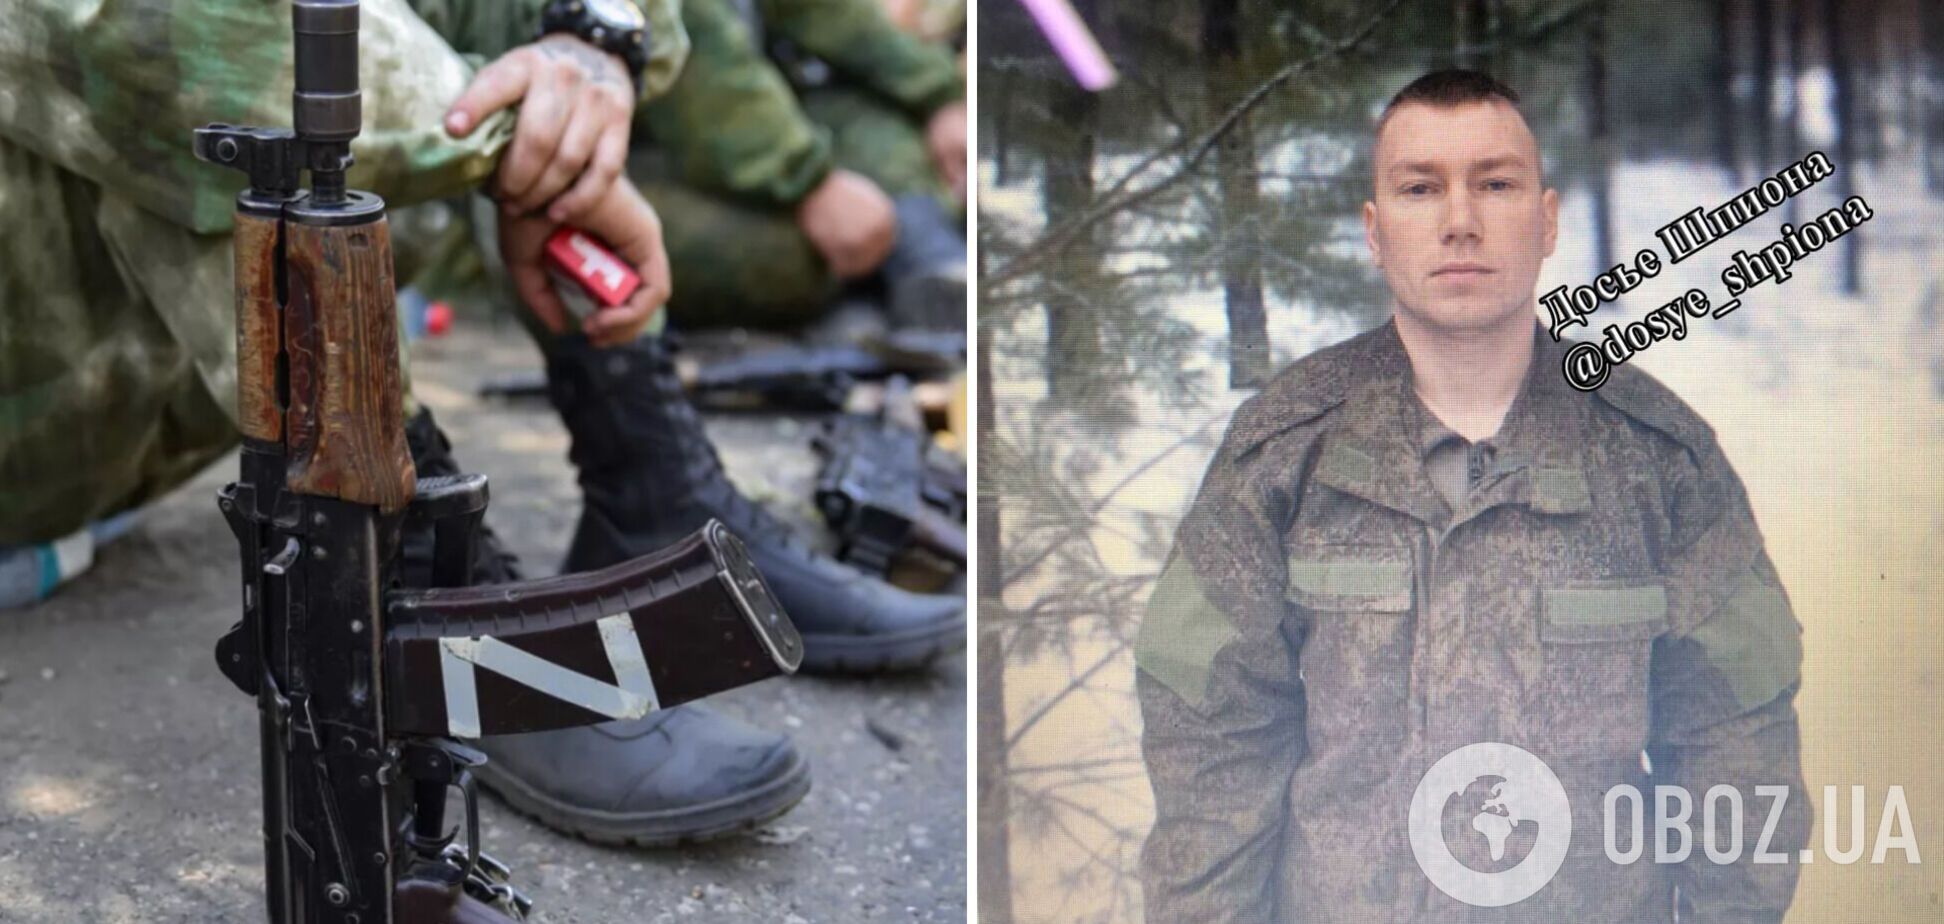 Застрелил двух сослуживцев и скрылся: показательна история военных армии РФ в Украине. Фото